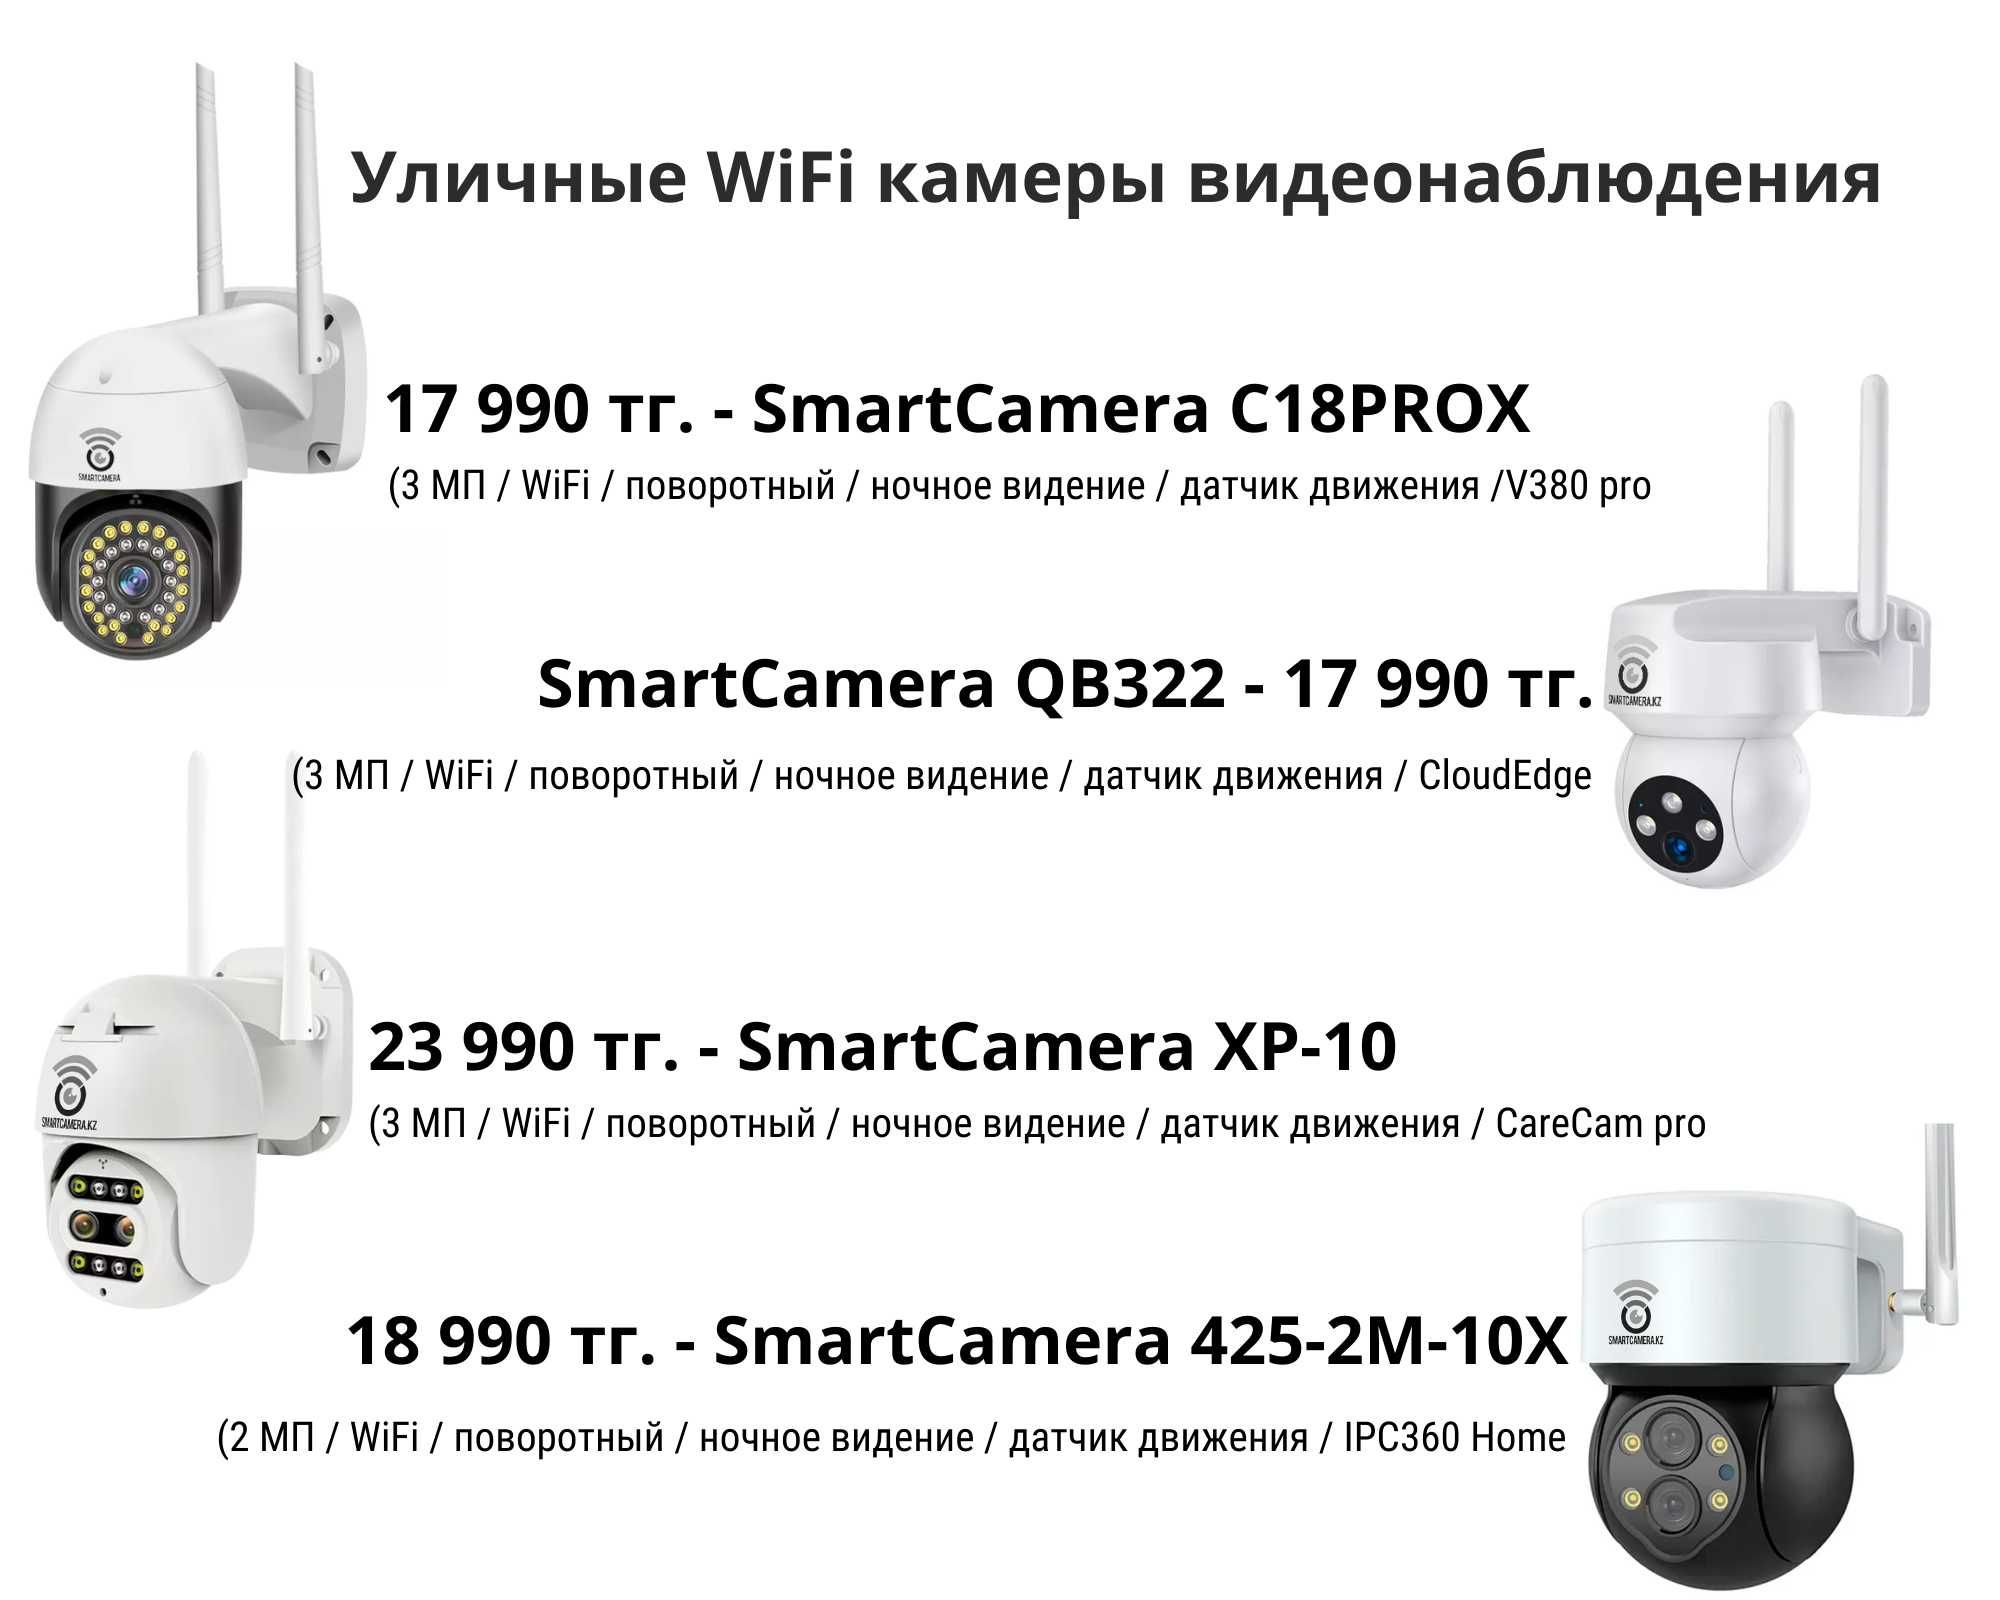 WiFi и 4G камеры видеонаблюдения с ночным видением